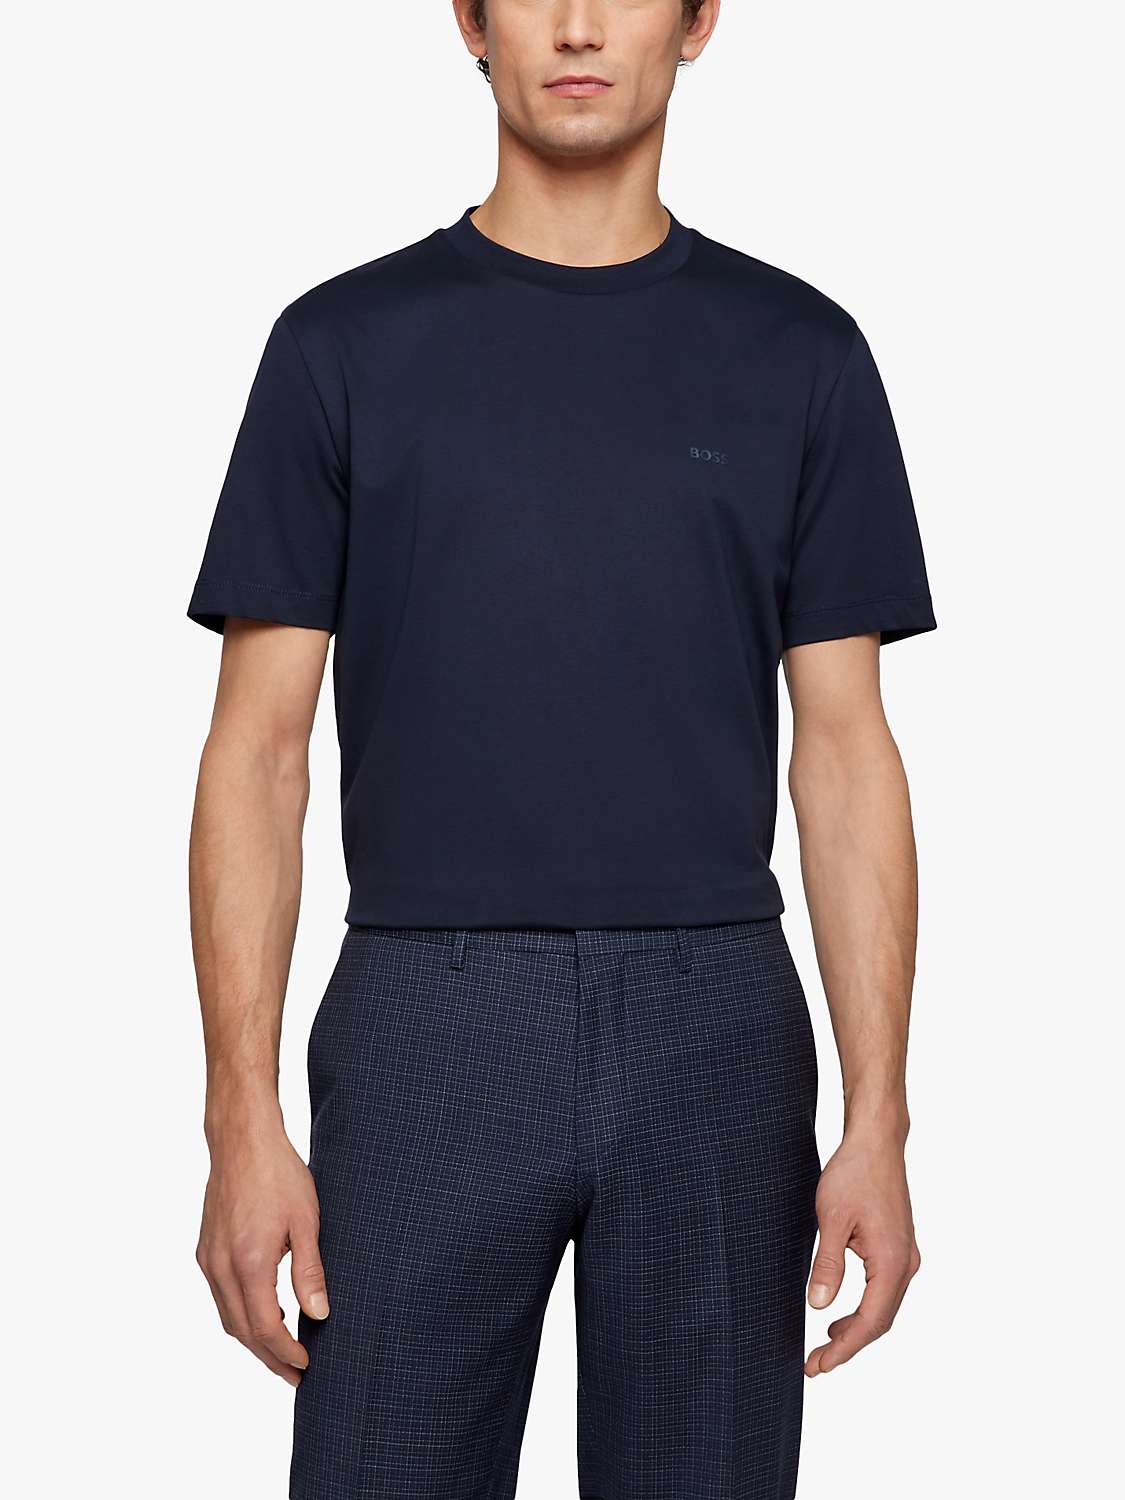 Buy BOSS Regular Fit Cotton T-Shirt, Dark Blue Online at johnlewis.com